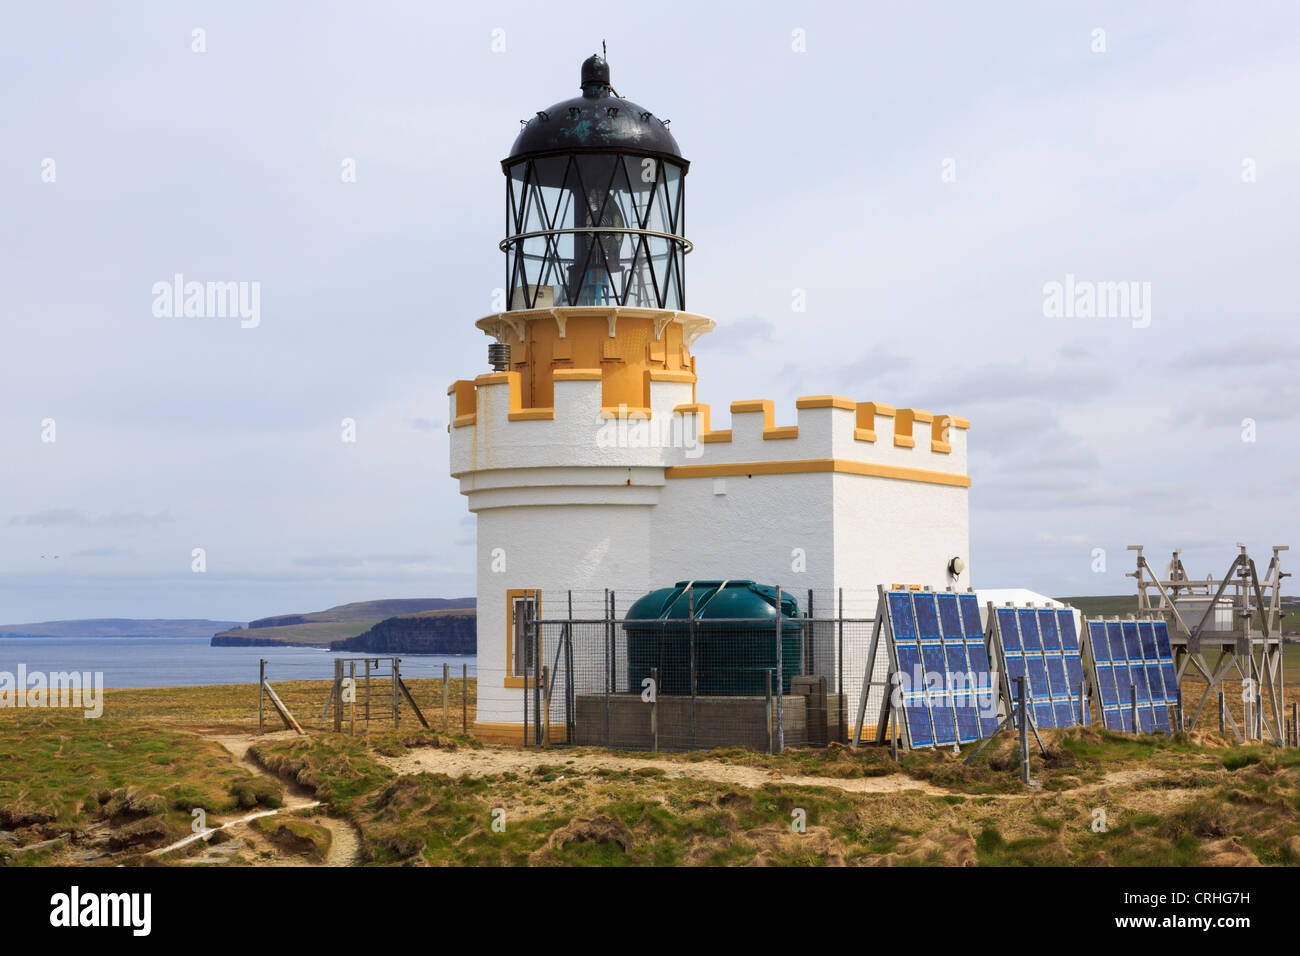 Birsay Leuchtturm von David Stevenson 1925 errichtet wird nun durch Sonnenkollektoren auf Brough von birsay Orkney Inseln Schottland Großbritannien powered Stockfoto